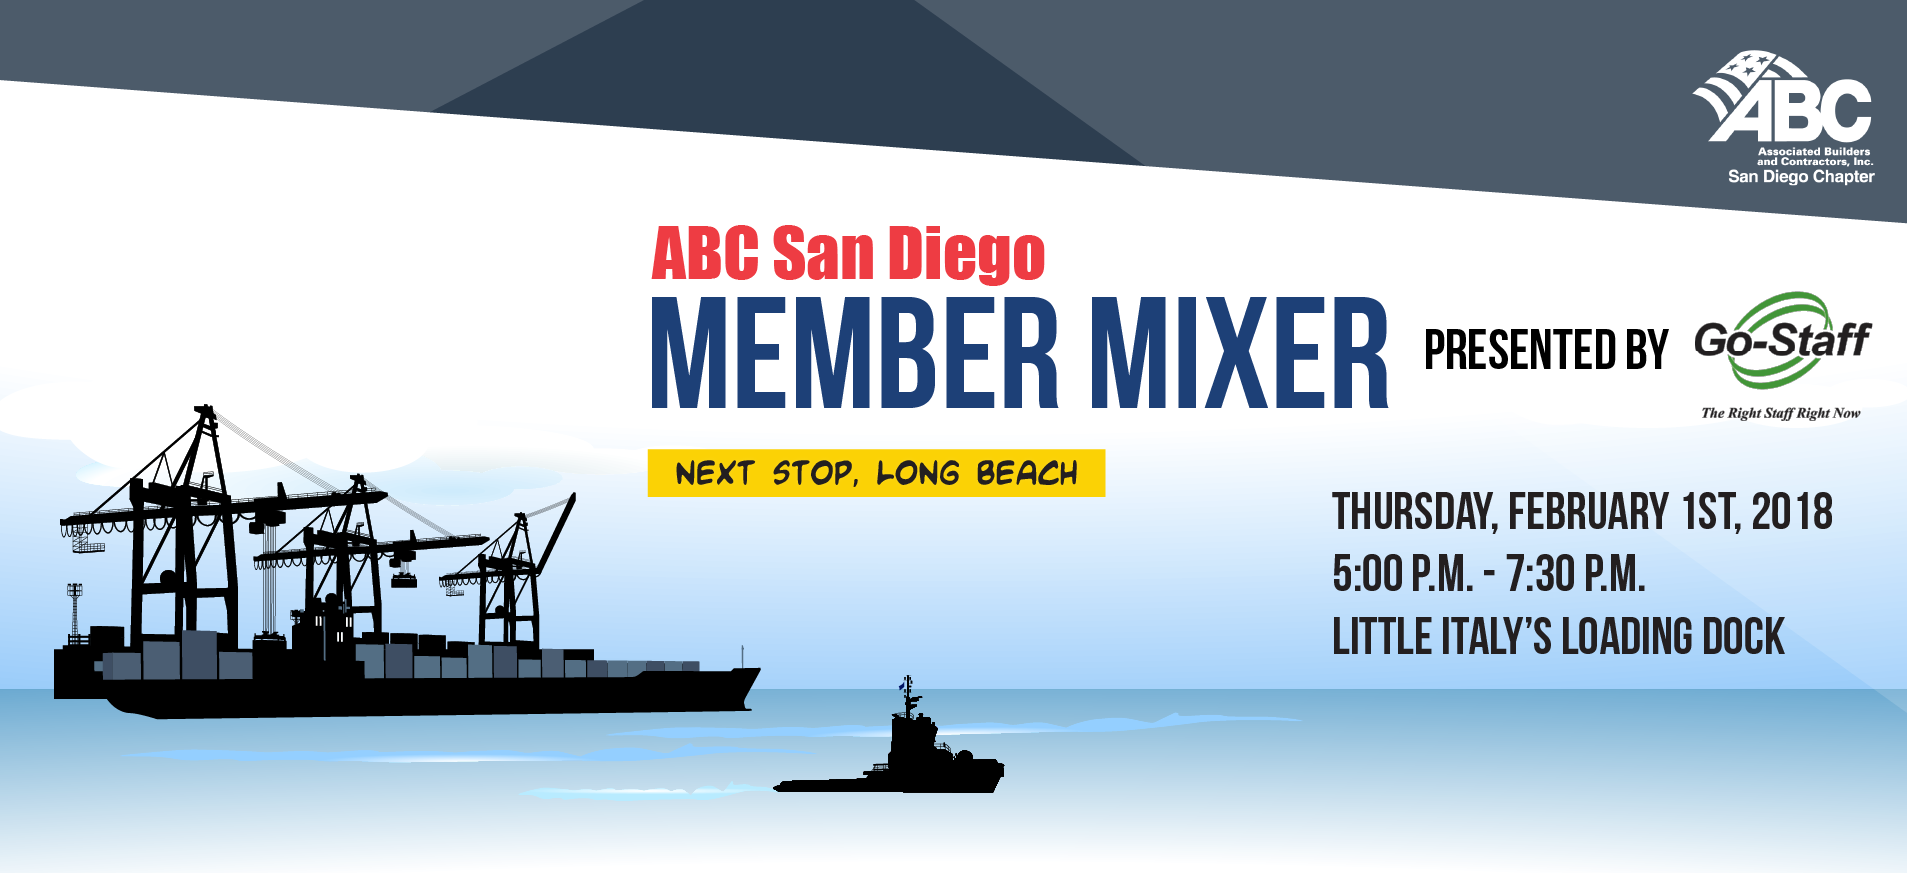 Member Mixer - Next Stop, Long Beach